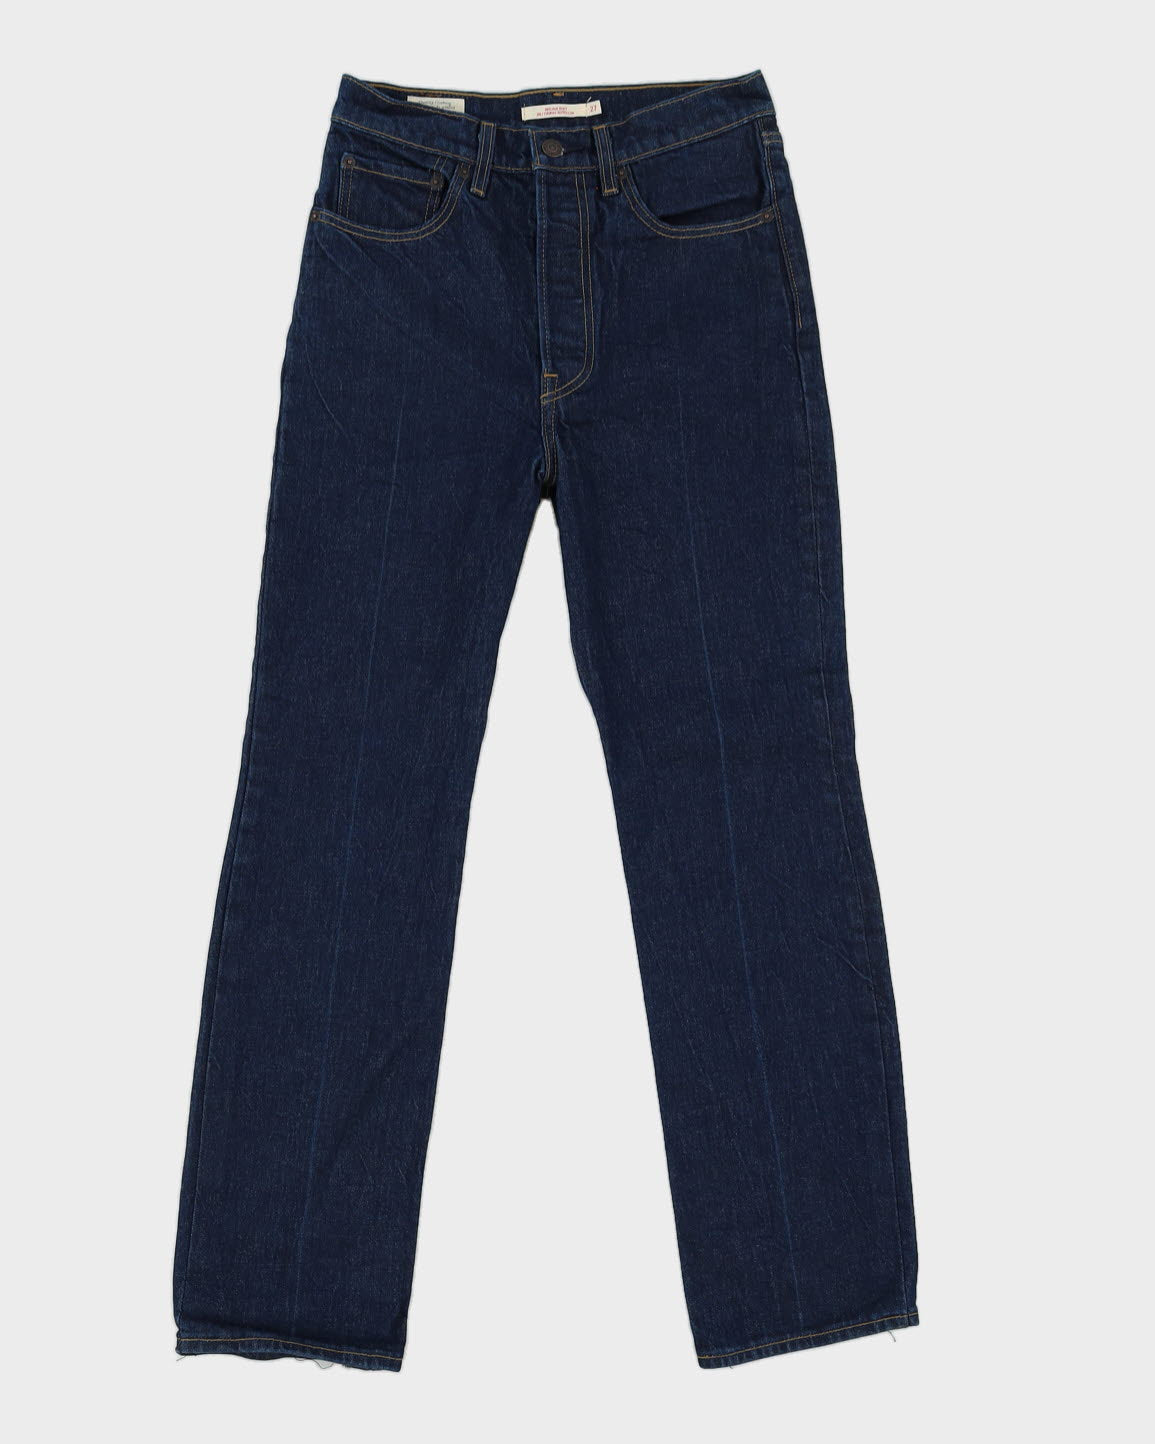 Levi's Big E Repro Dark Wash Blue Jeans - W28 L29